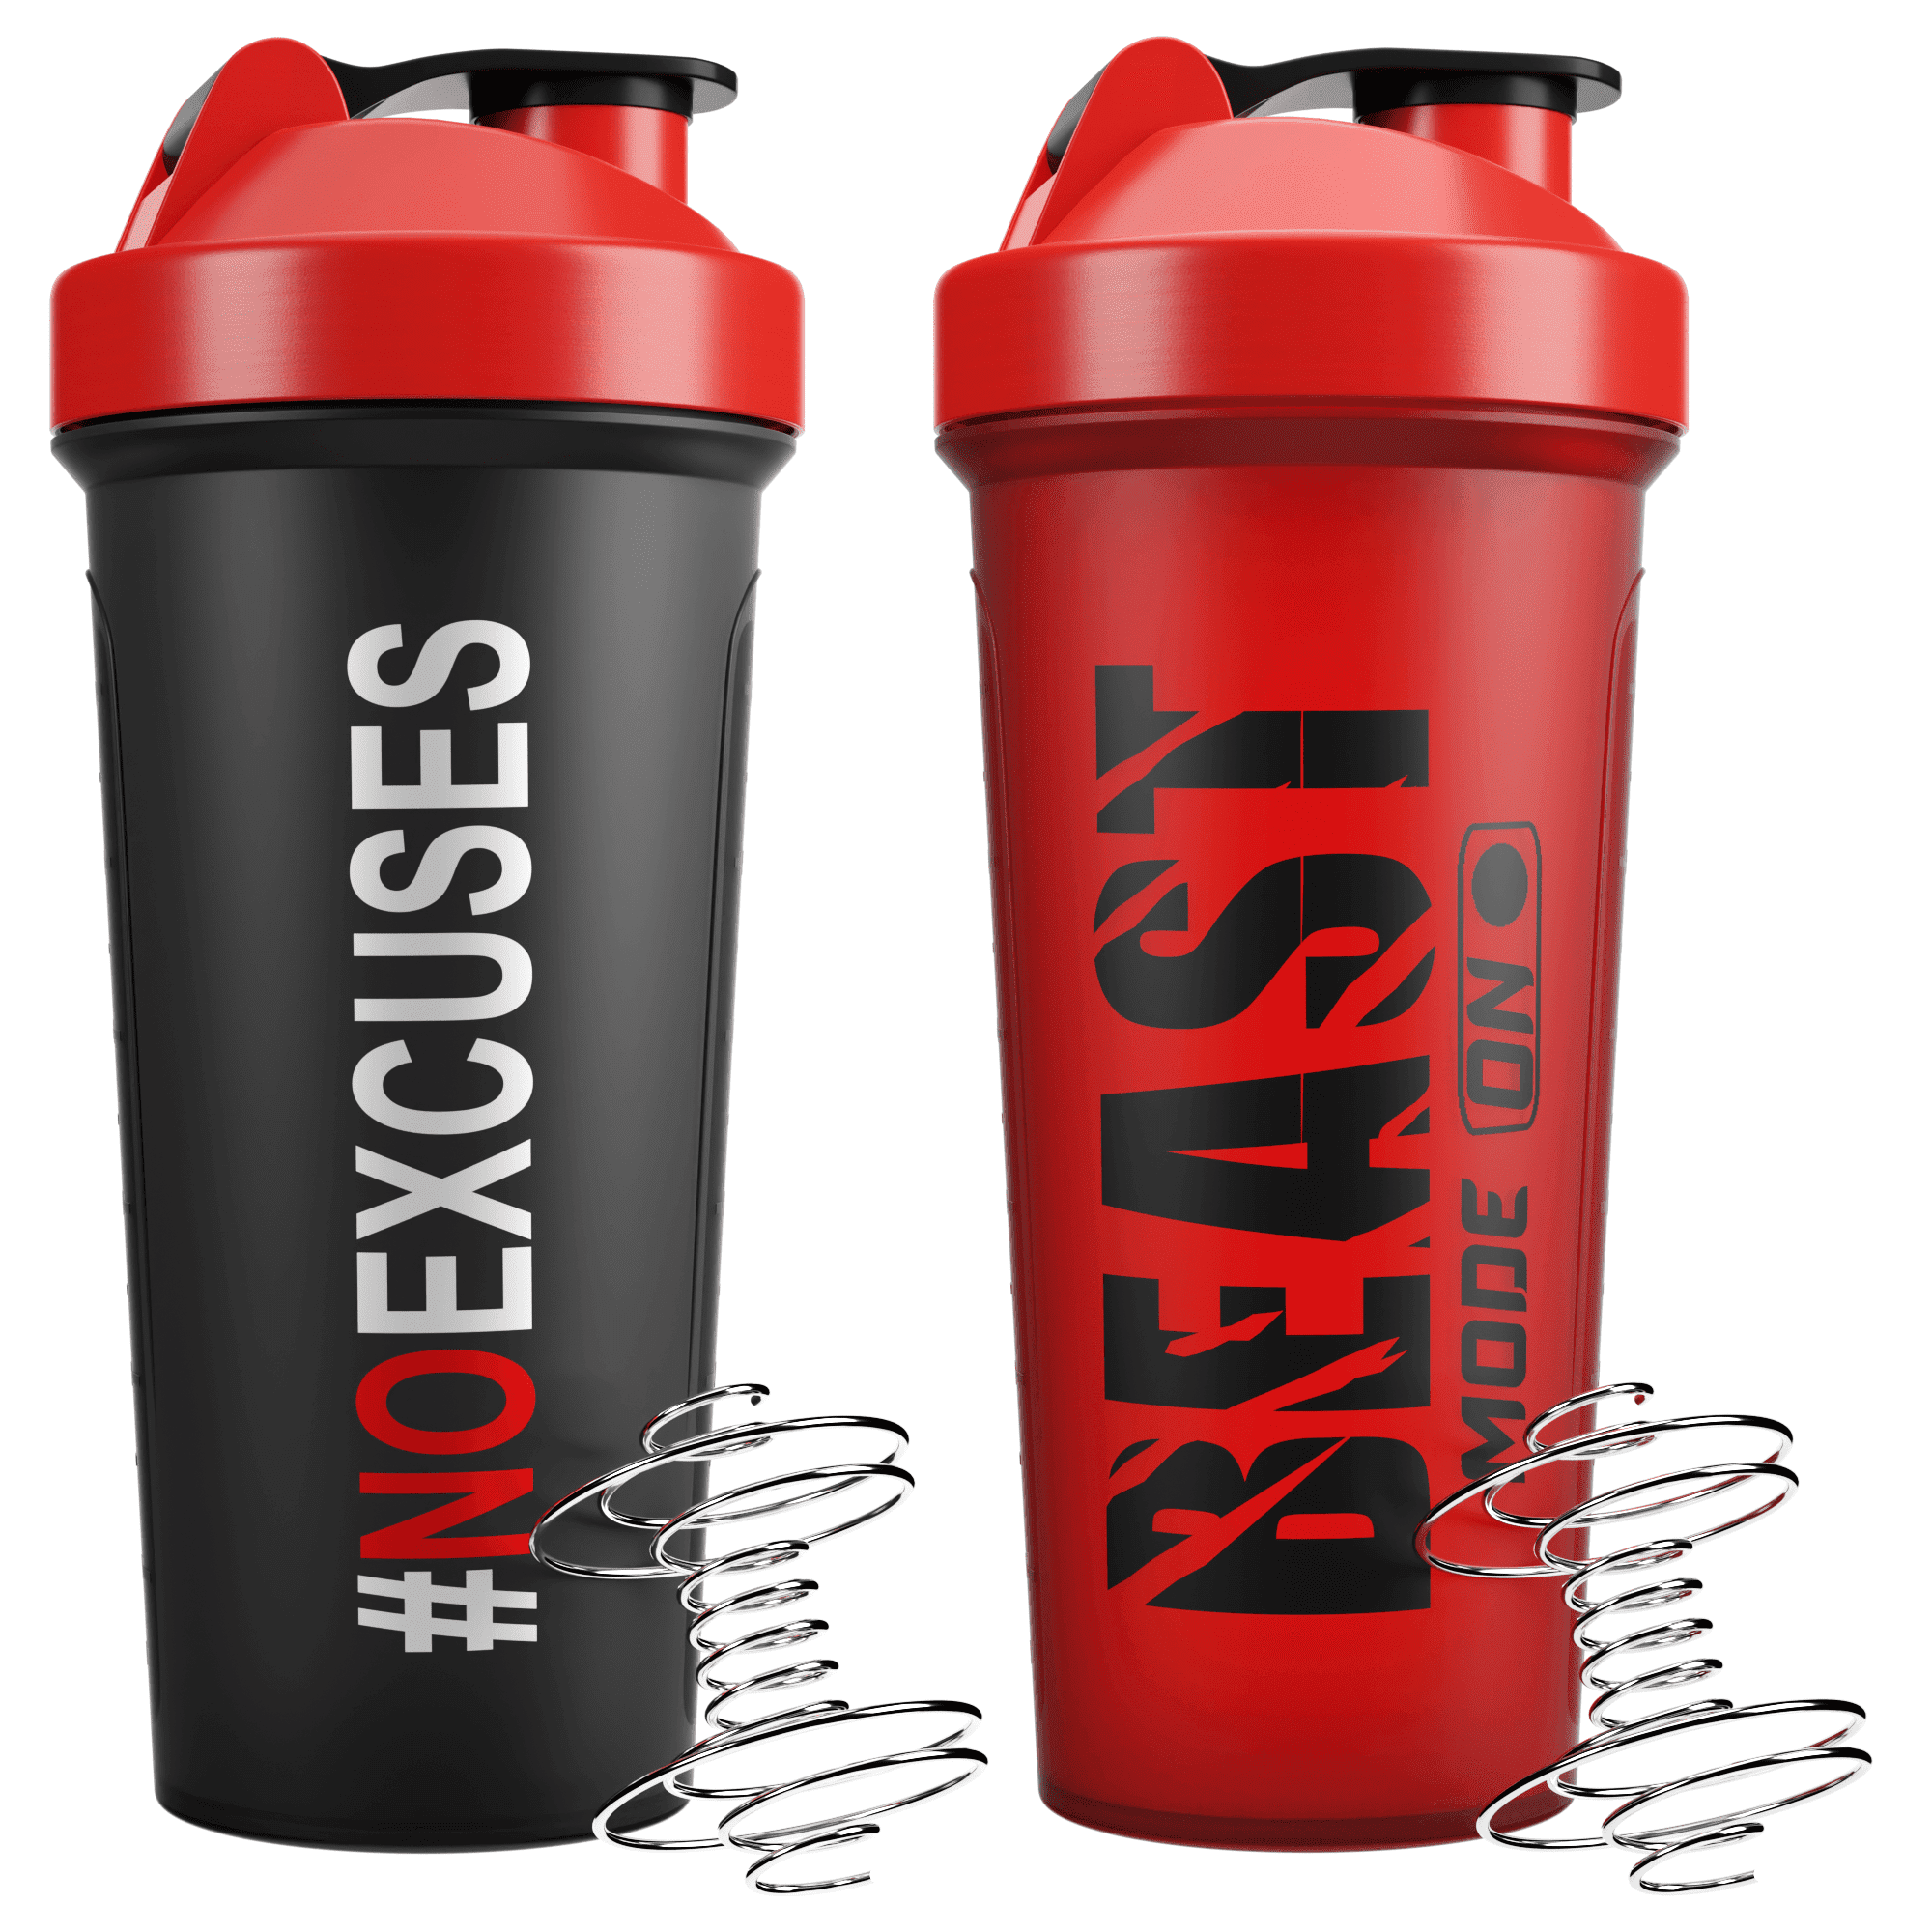  JRKJ Protein Shaker Bottles,Fitness Shake Cups